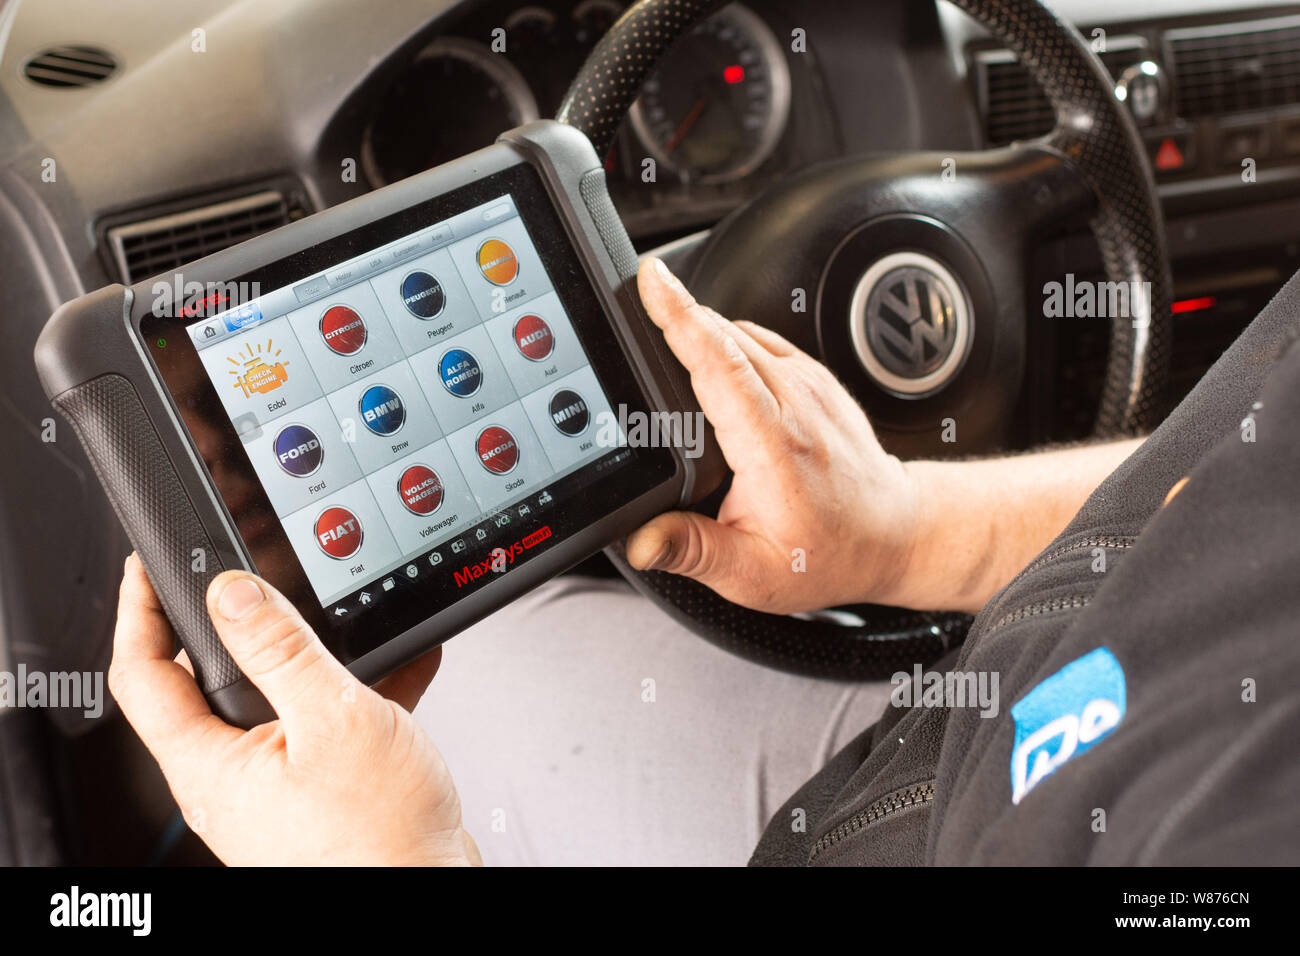 Garage: KFZ-Mechanik. Arbeitnehmer mit dem Touchscreen tablet eines Autos Diagnosegerät auf dem Vordersitz eines Volkswagen Auto, um mögliche Ger erkennen Stockfoto